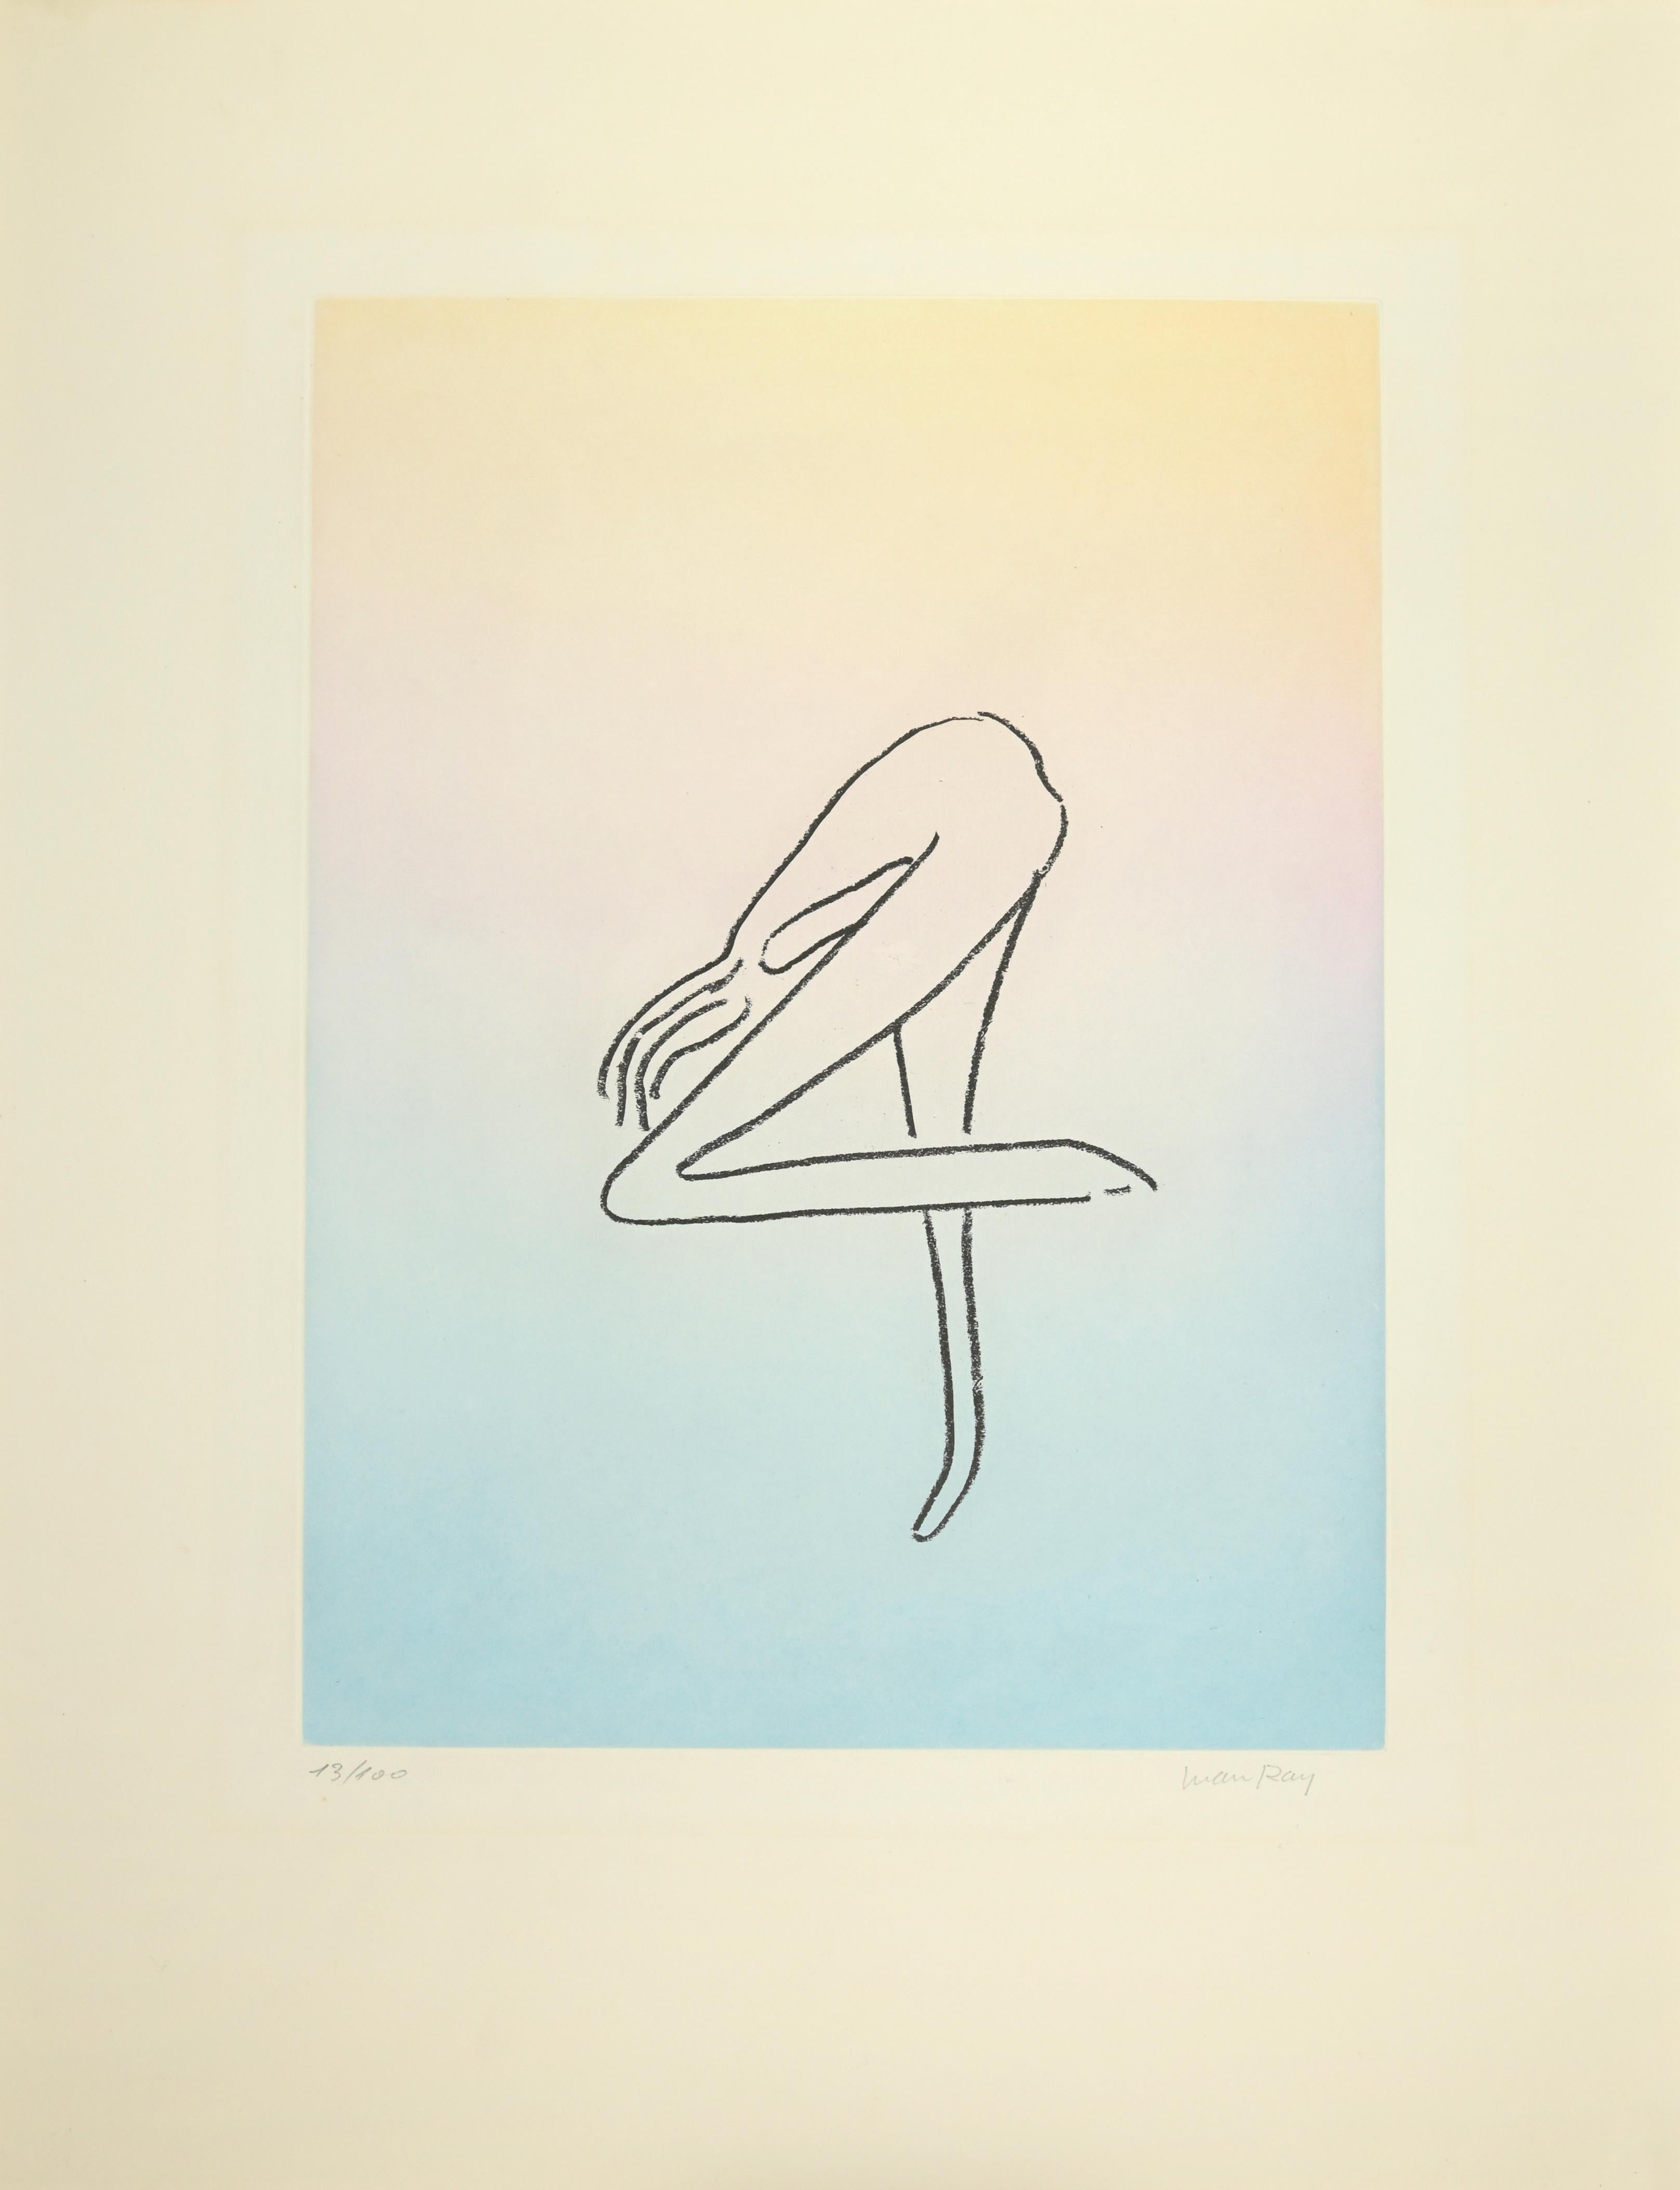 Sans titre est une œuvre d'art réalisée par Man Ray (1890 - 1976) en 1970.

Gravure et aquatinte de la série Les Anatomes.

Aquatinte sur papier lana.

Signé et numéroté à la main. Édition 13/100.

Image 43 x 31,8 cm ; Feuille 66 x 50,8 cm.

Réf.